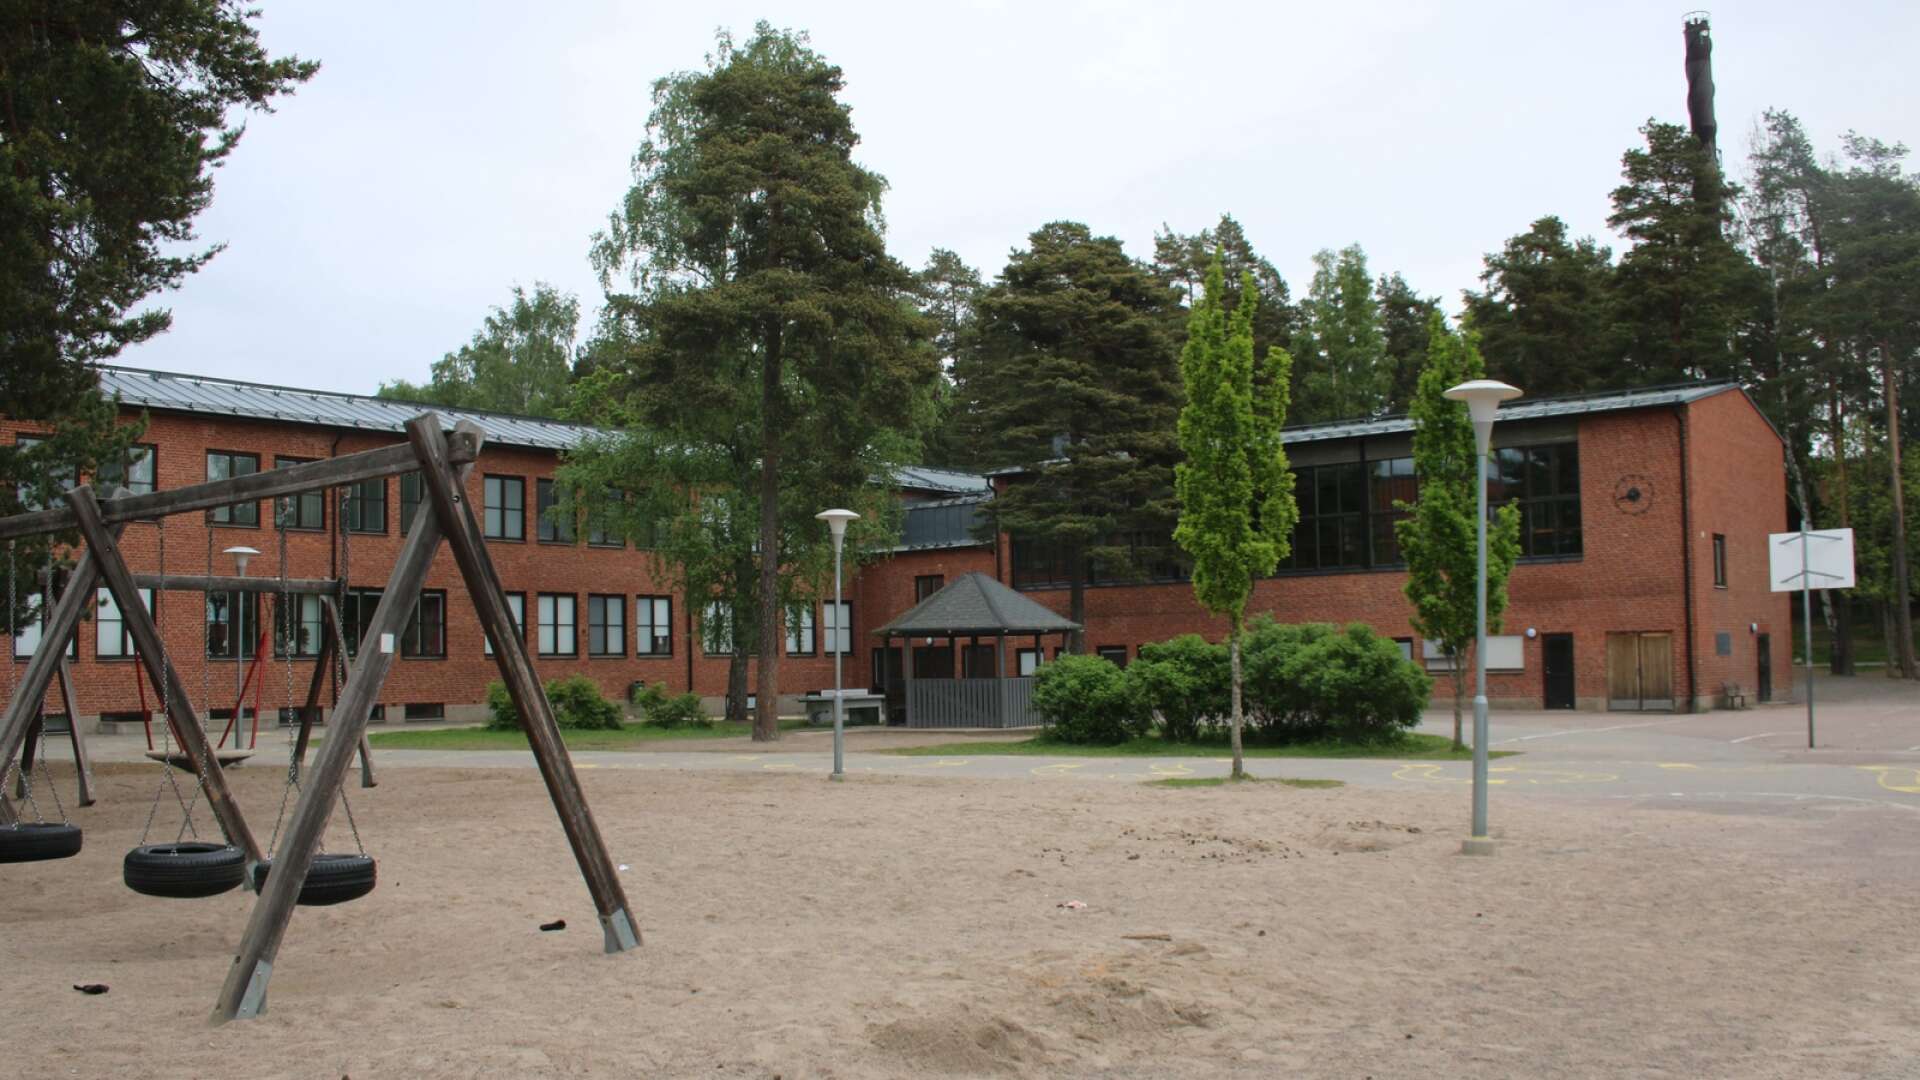 Tingvallaskolans förskoleklasser får fortsätta stanna hemma även nästa vecka. Det meddelar Säffle kommun under fredagsförmiddagen.